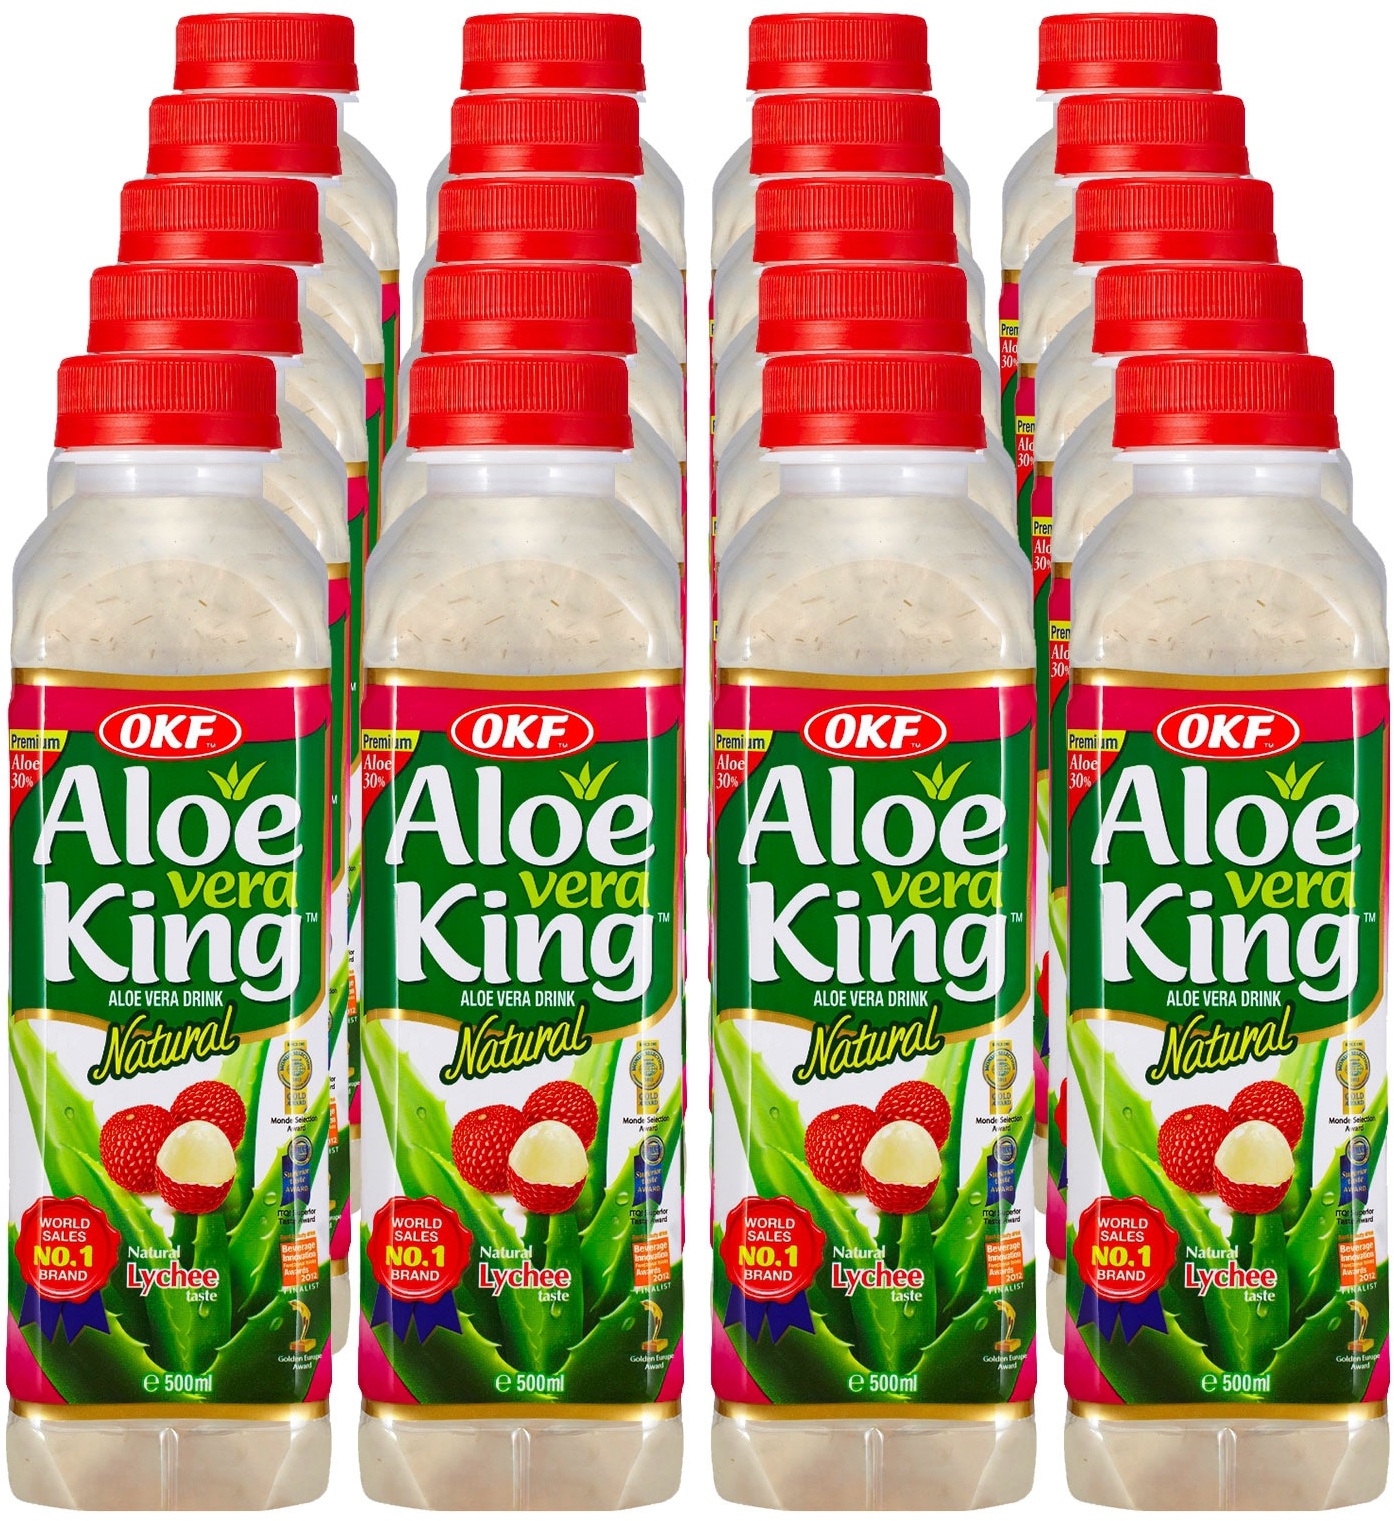 OKF Aloe Vera King Lychee 0,5 Liter, 20er Pack